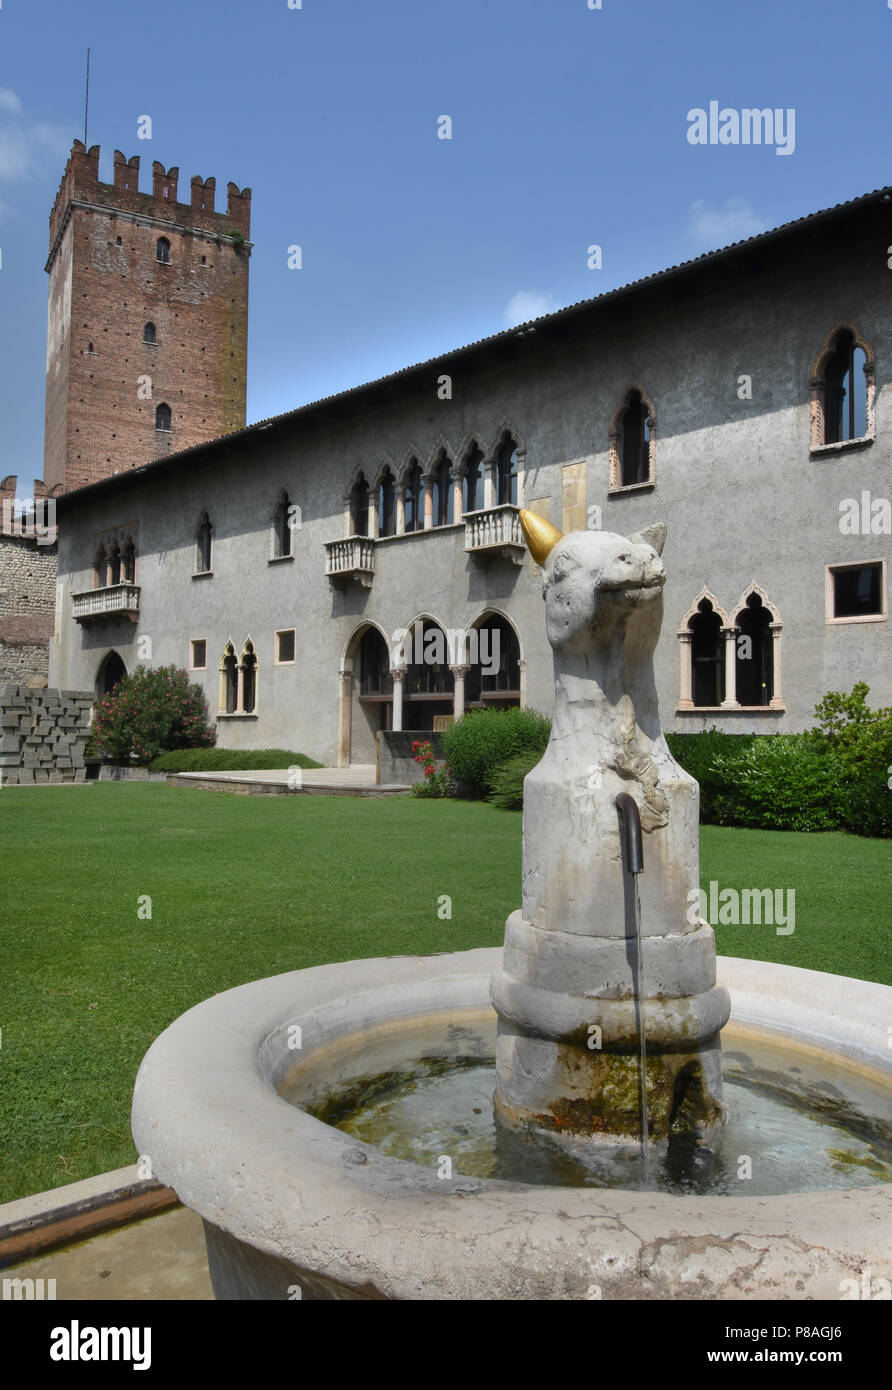 Castelvecchio (in Italienisch - Alte Burg) ist ein Schloss und Museum in Verona, Norditalien. Es ist das wichtigste militärische Bau der Scaliger Dynastie, die die Stadt im Mittelalter herrschte. Stadt Verona in Venetien, Italien, Italienisch. Stockfoto